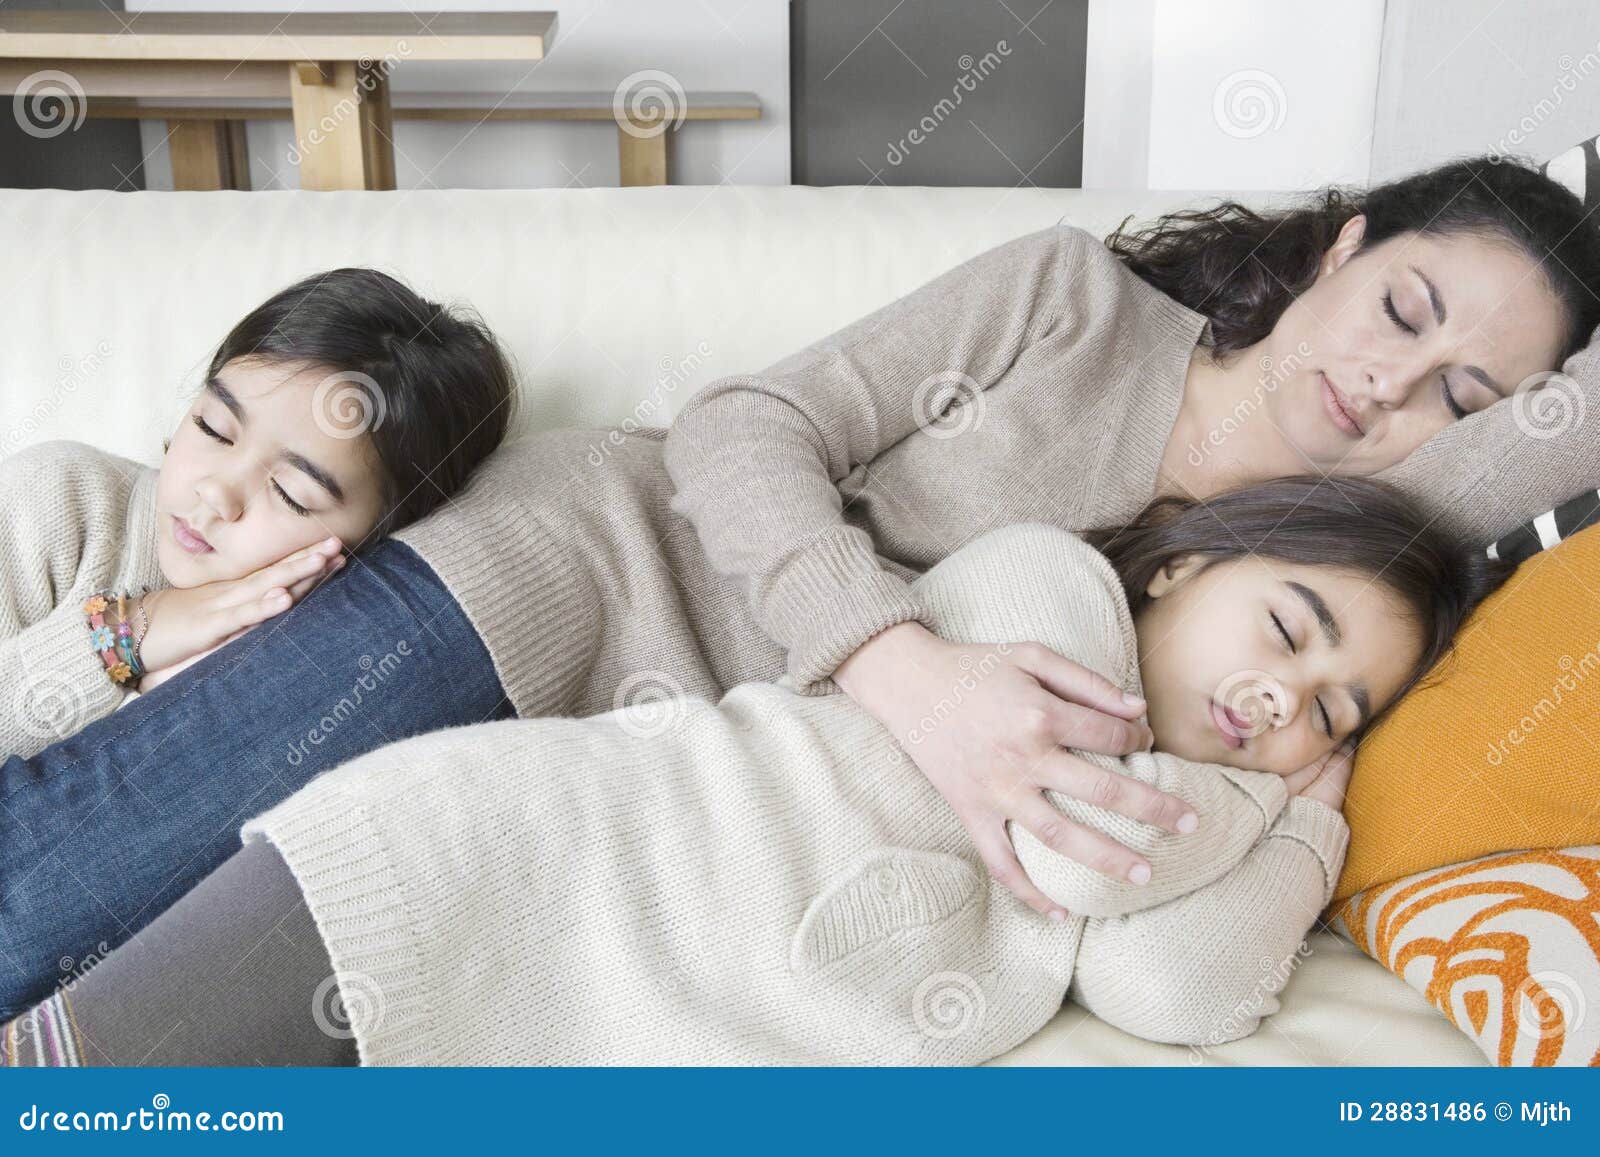 family voyeur mother sleeping Porn Photos